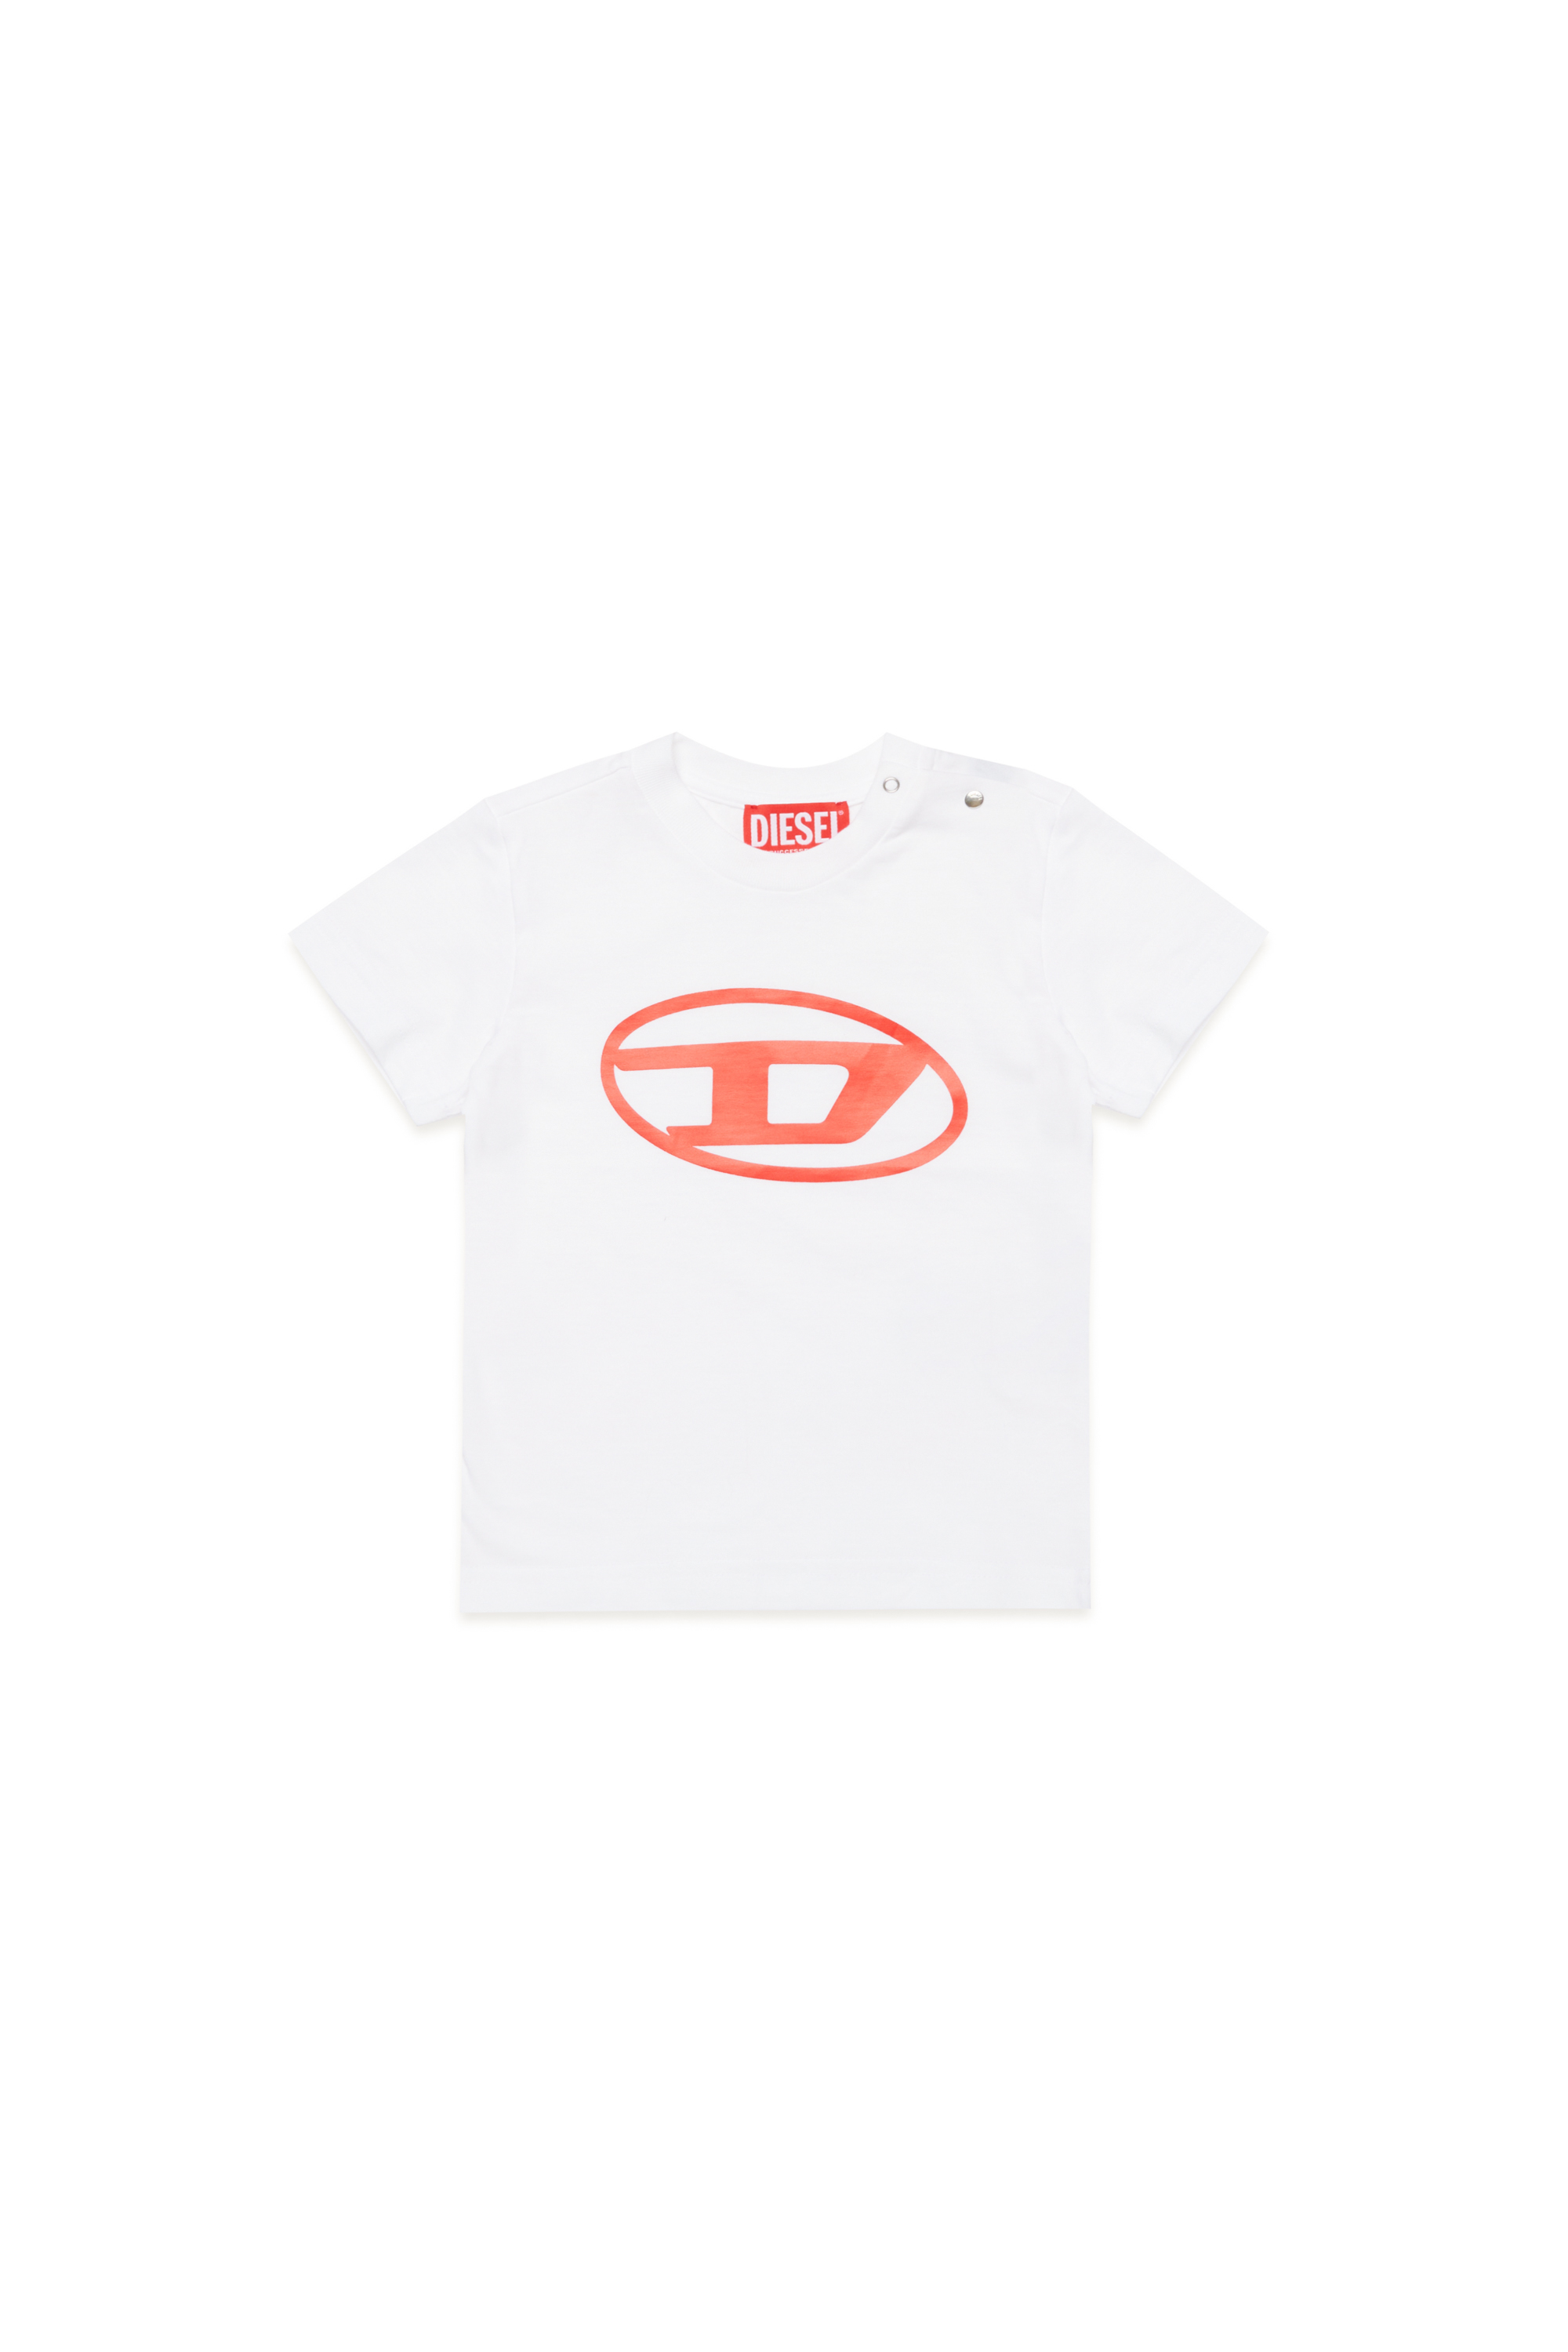 Diesel - T-Shirt mit Oval D-Logo - T-Shirts und Tops - Unisex - Weiss